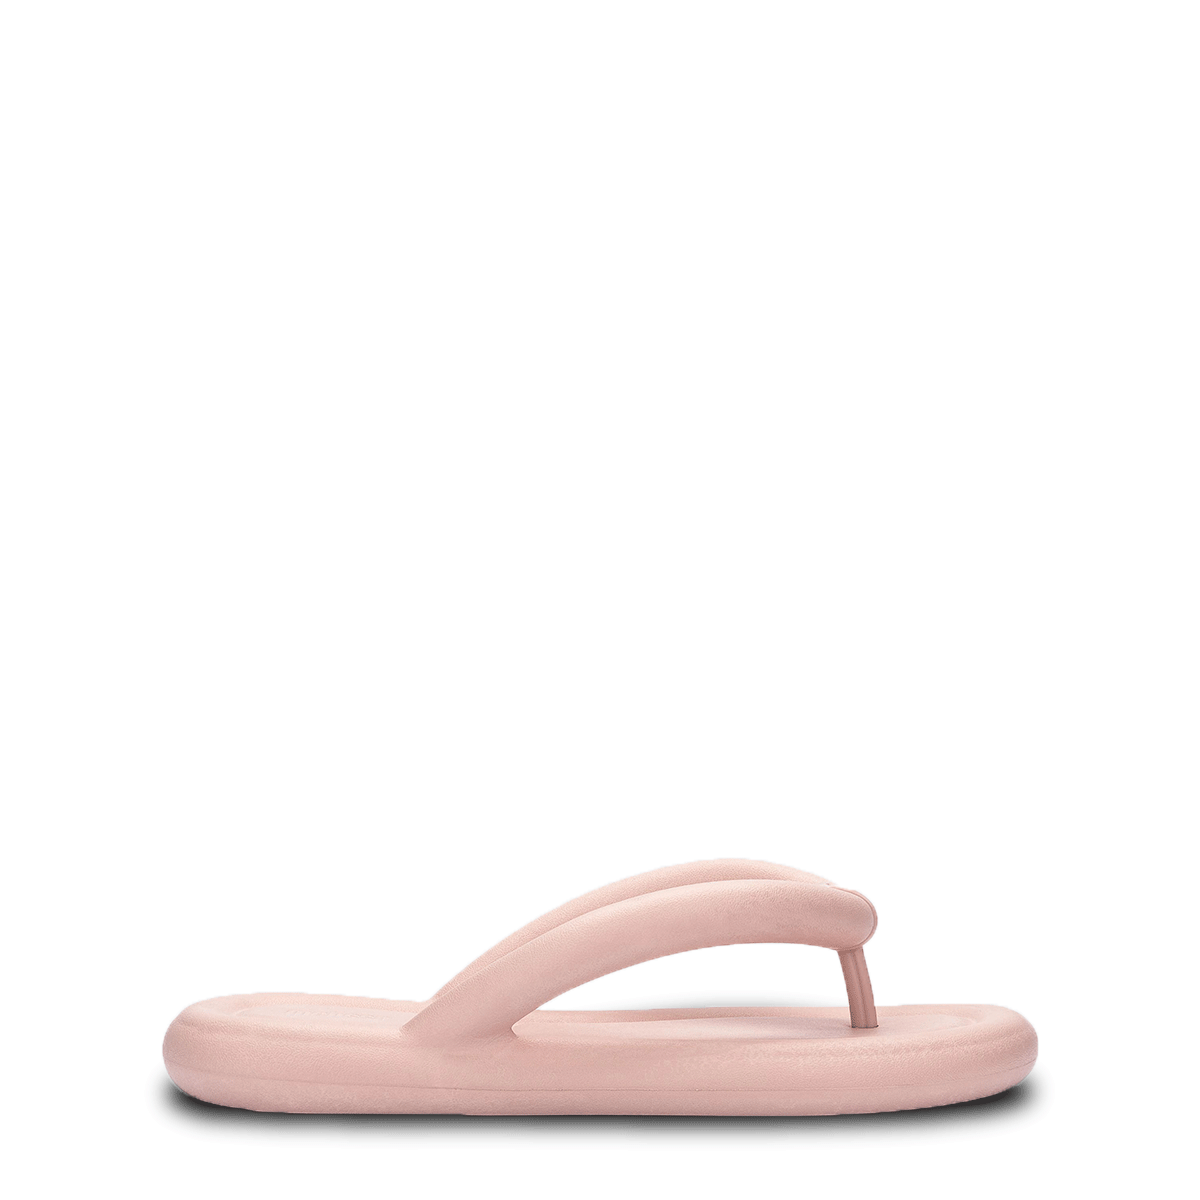 Calçados: Chinelo Nuvem, Slide e Flip Flop #13 - Menina Shoes